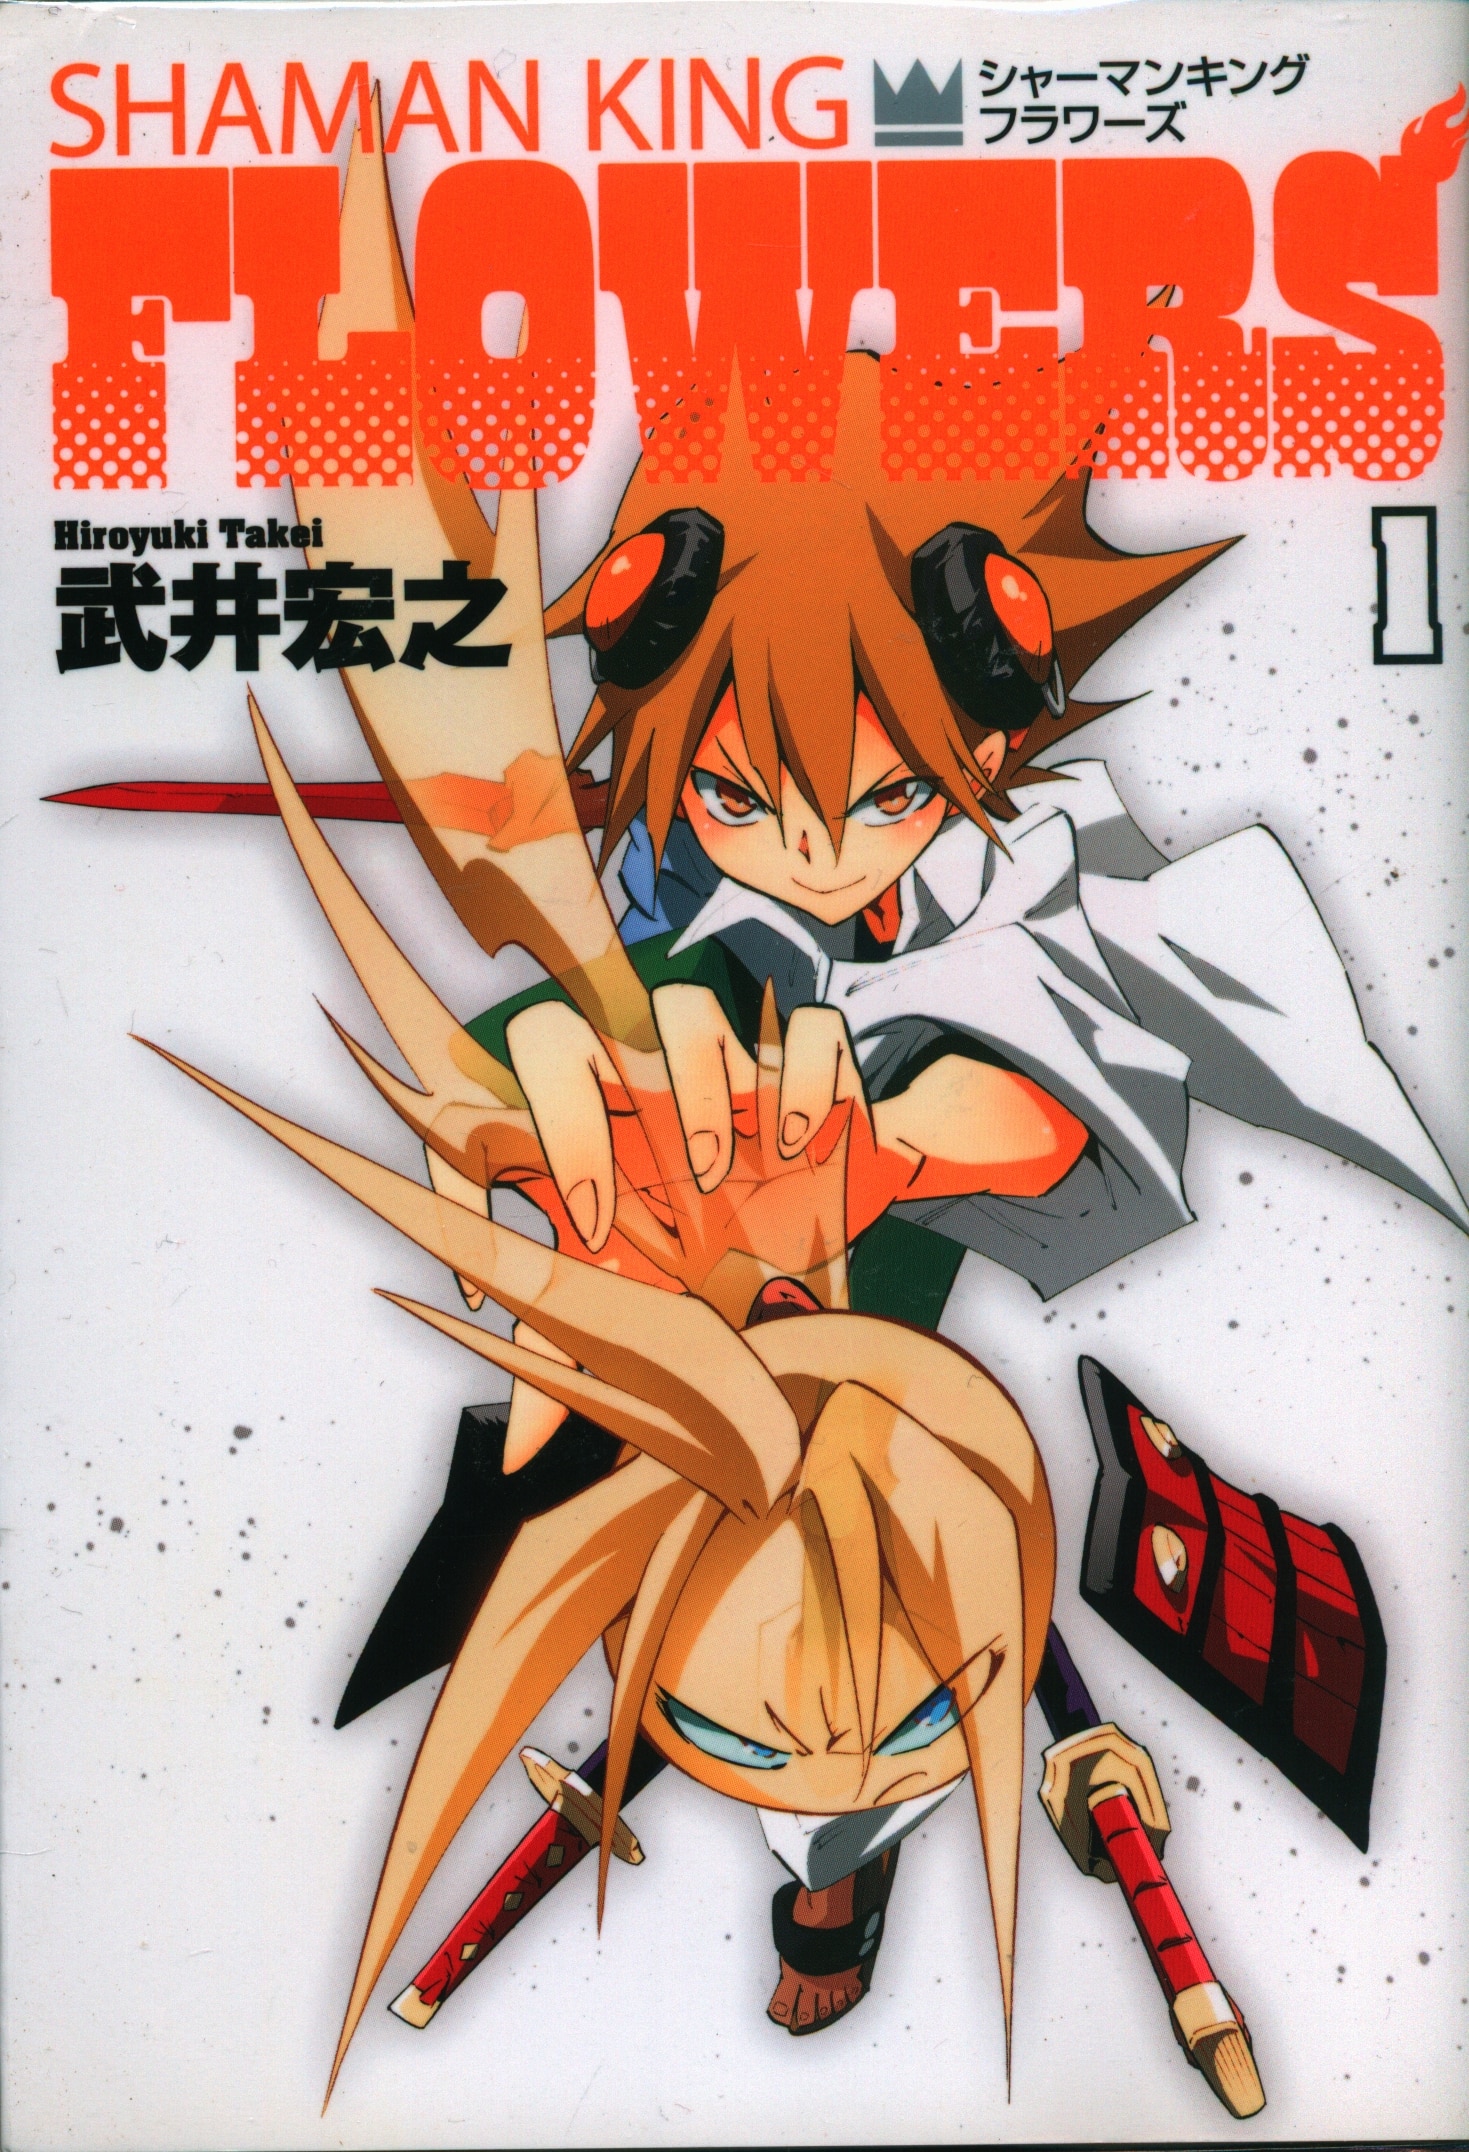 Shaman King FLOWERS comic 1-6 vol anime japanese manga 